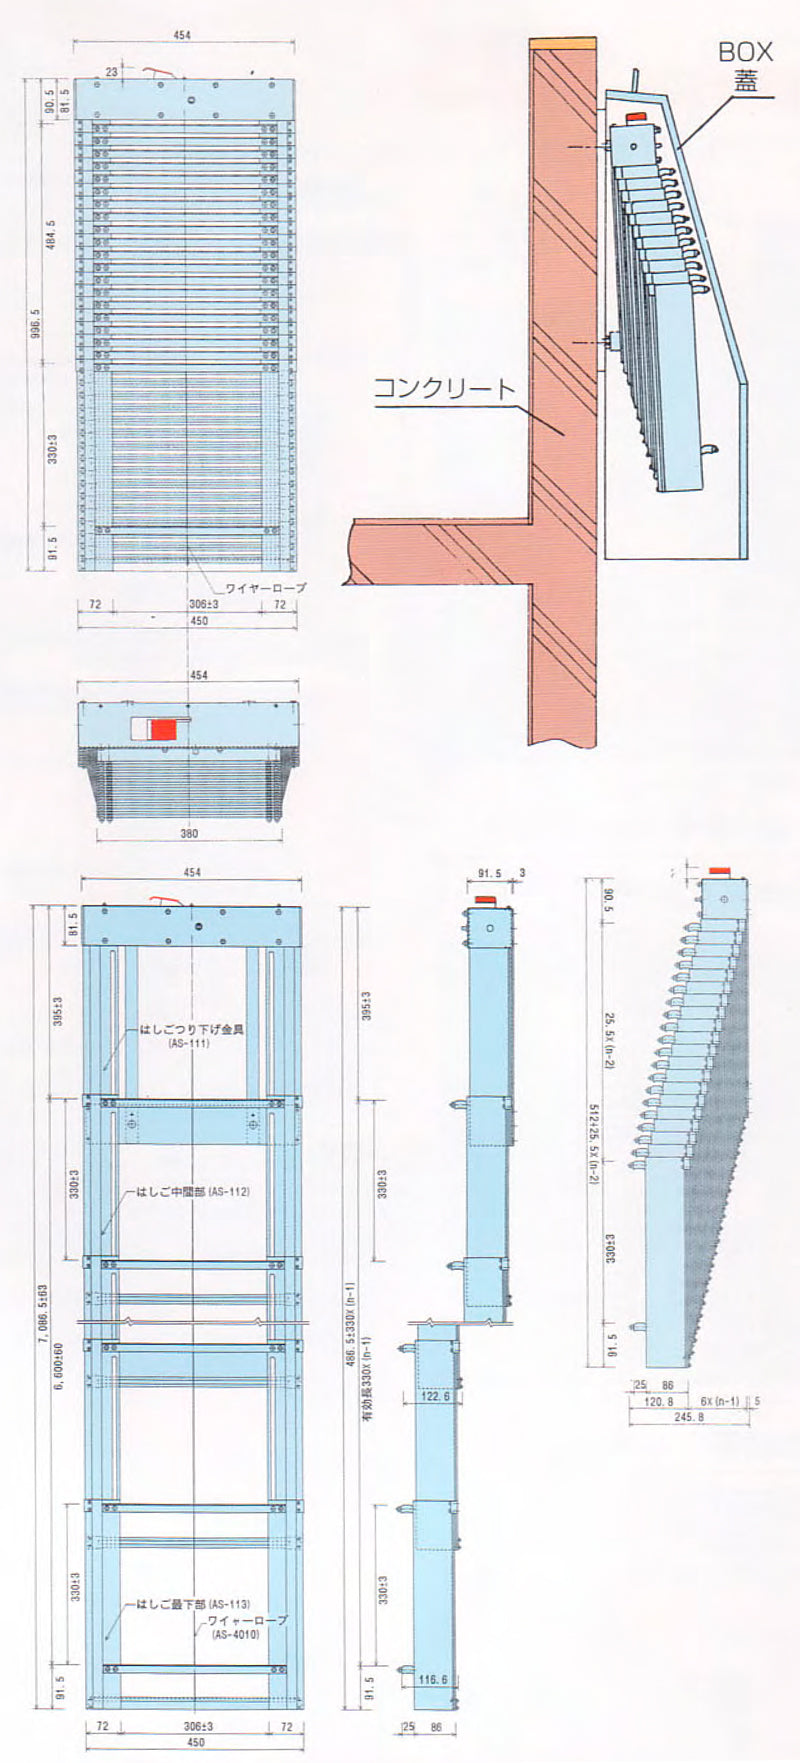 ORIRO SOS 5型 避難はしご収納BOXセット。柱状の縦棒で構成。揺れが少なく、安定した足元を確保。設置可能範囲の高さ 5,570mmまで